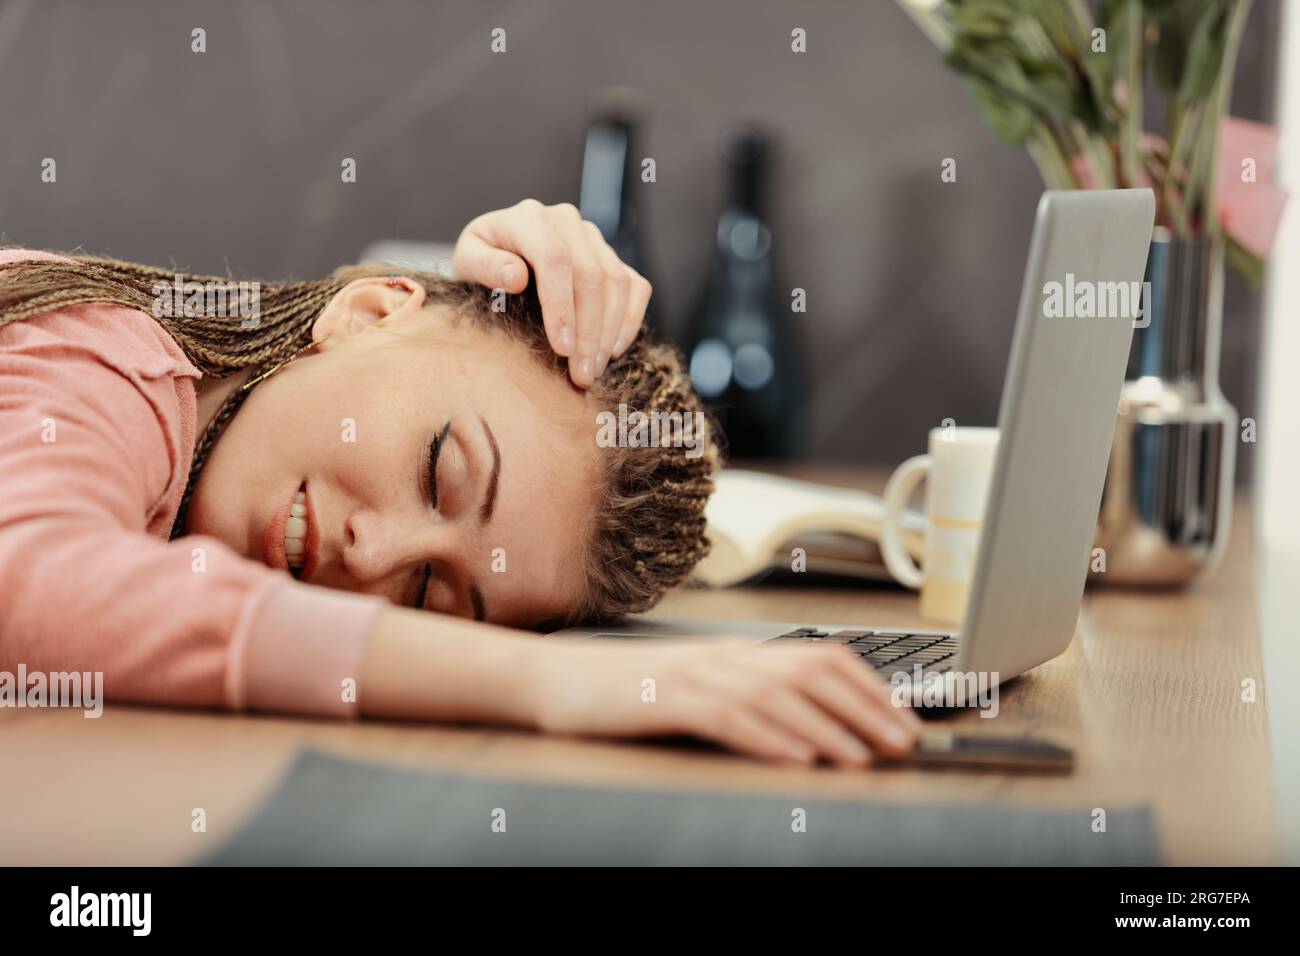 Erschöpft von der Arbeit oder vom Lernen, schläft eine Frau mit Boxgeflecht an ihrem Laptop ein, Hand am Telefon Stockfoto